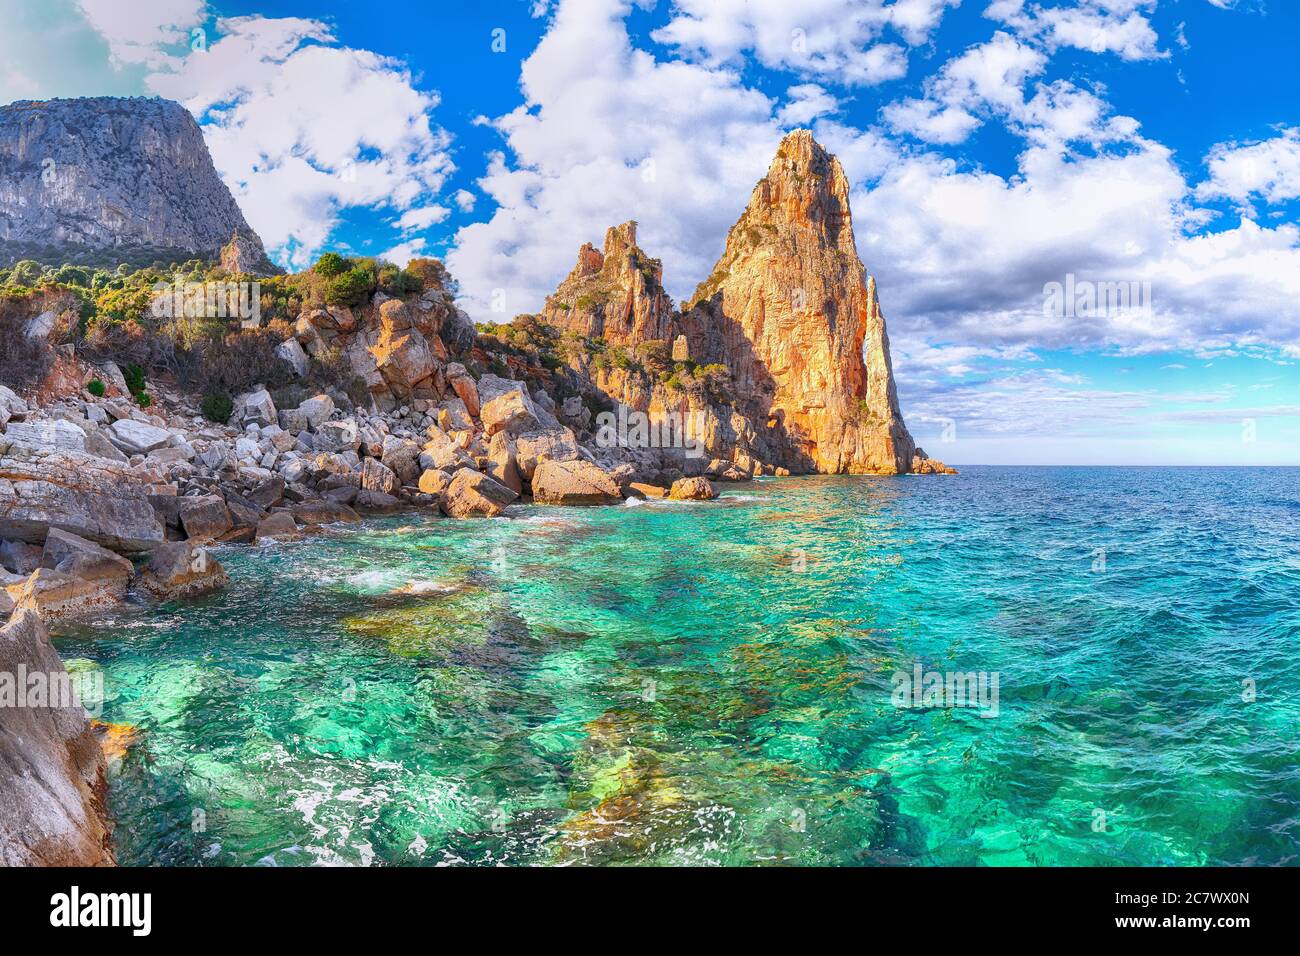 Spektakuläre Aussicht auf Punta Pedra Longa und azurblaues Wasser im Meer. Lage: Baunei, Provinz Nuoro, Sardinien, Italien, Europa Stockfoto